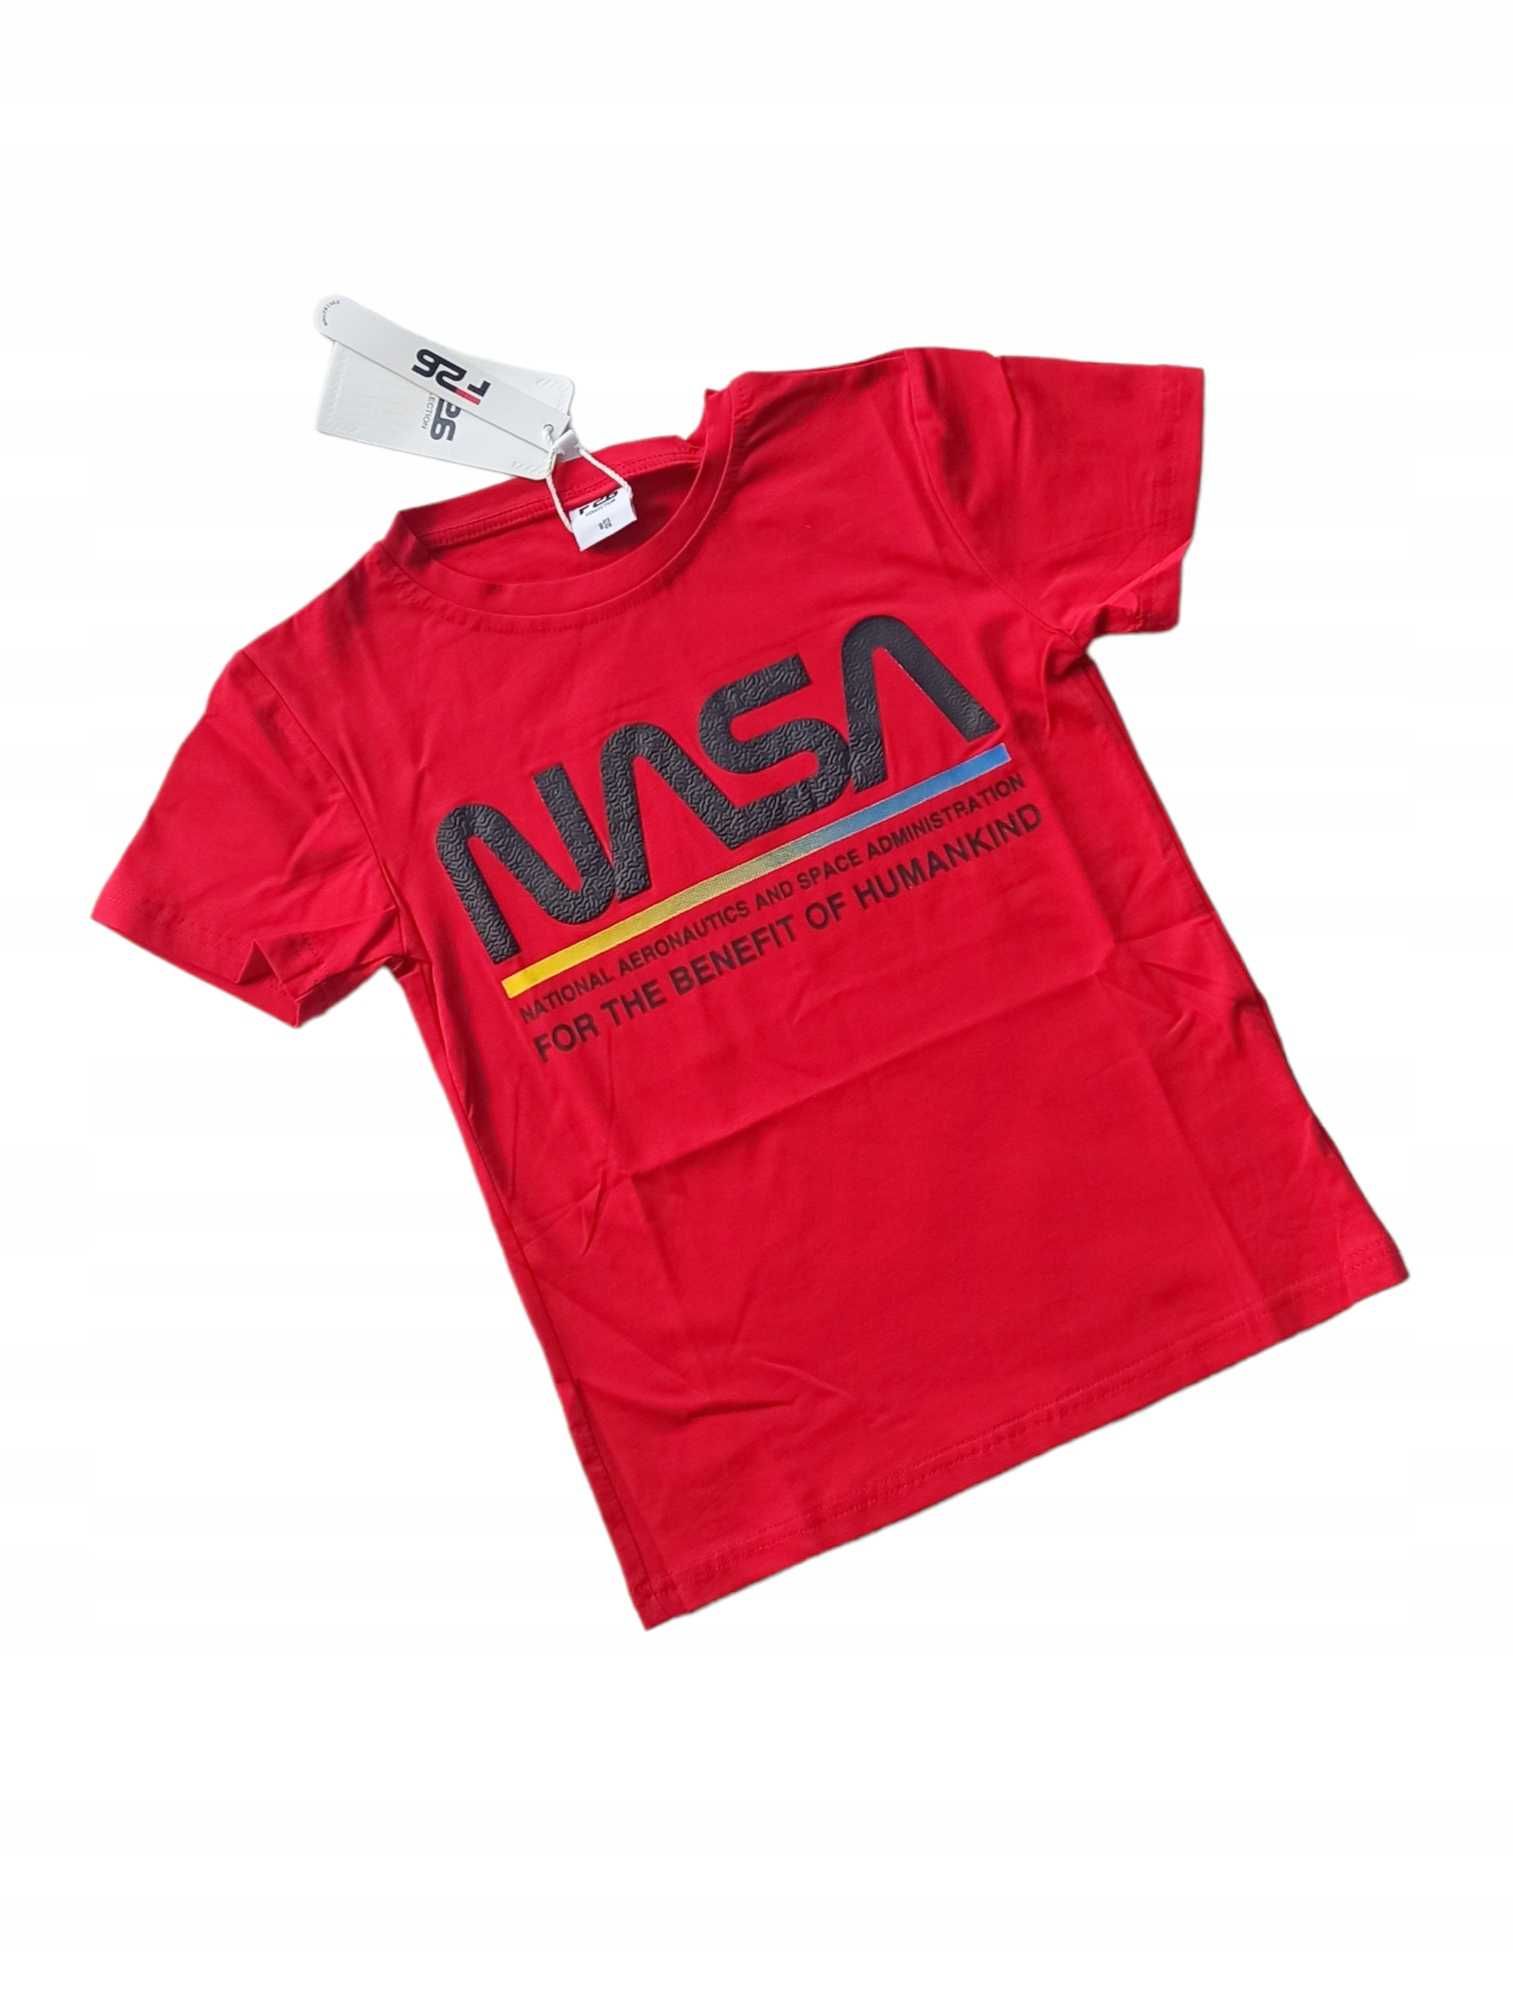 Czerwona bluzka dla chłopca t-shirt nowa 146-152